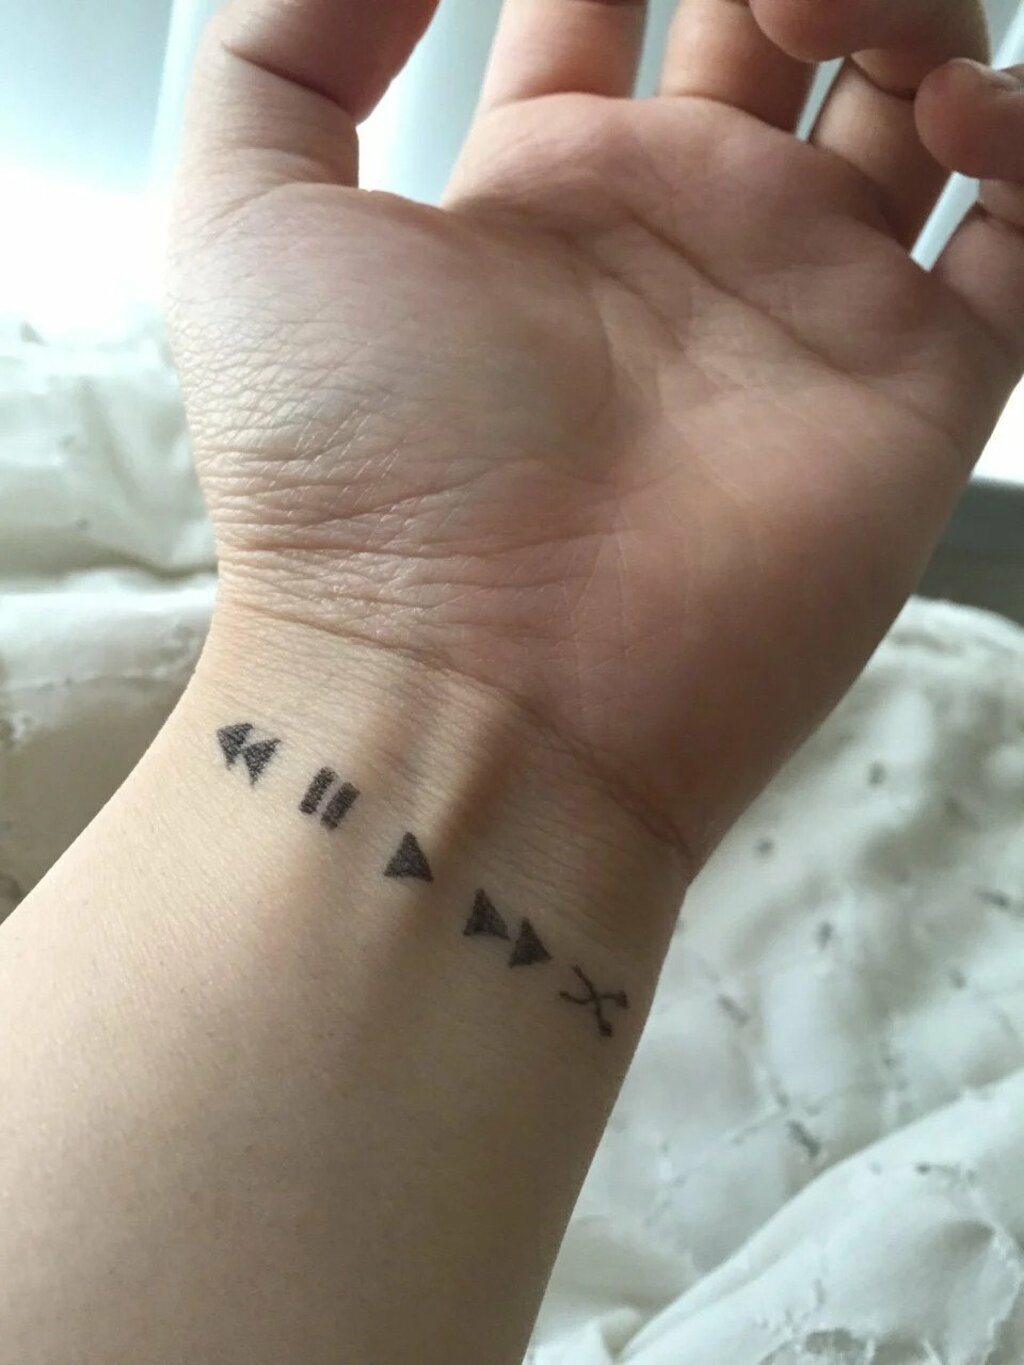 minimalist tattoo